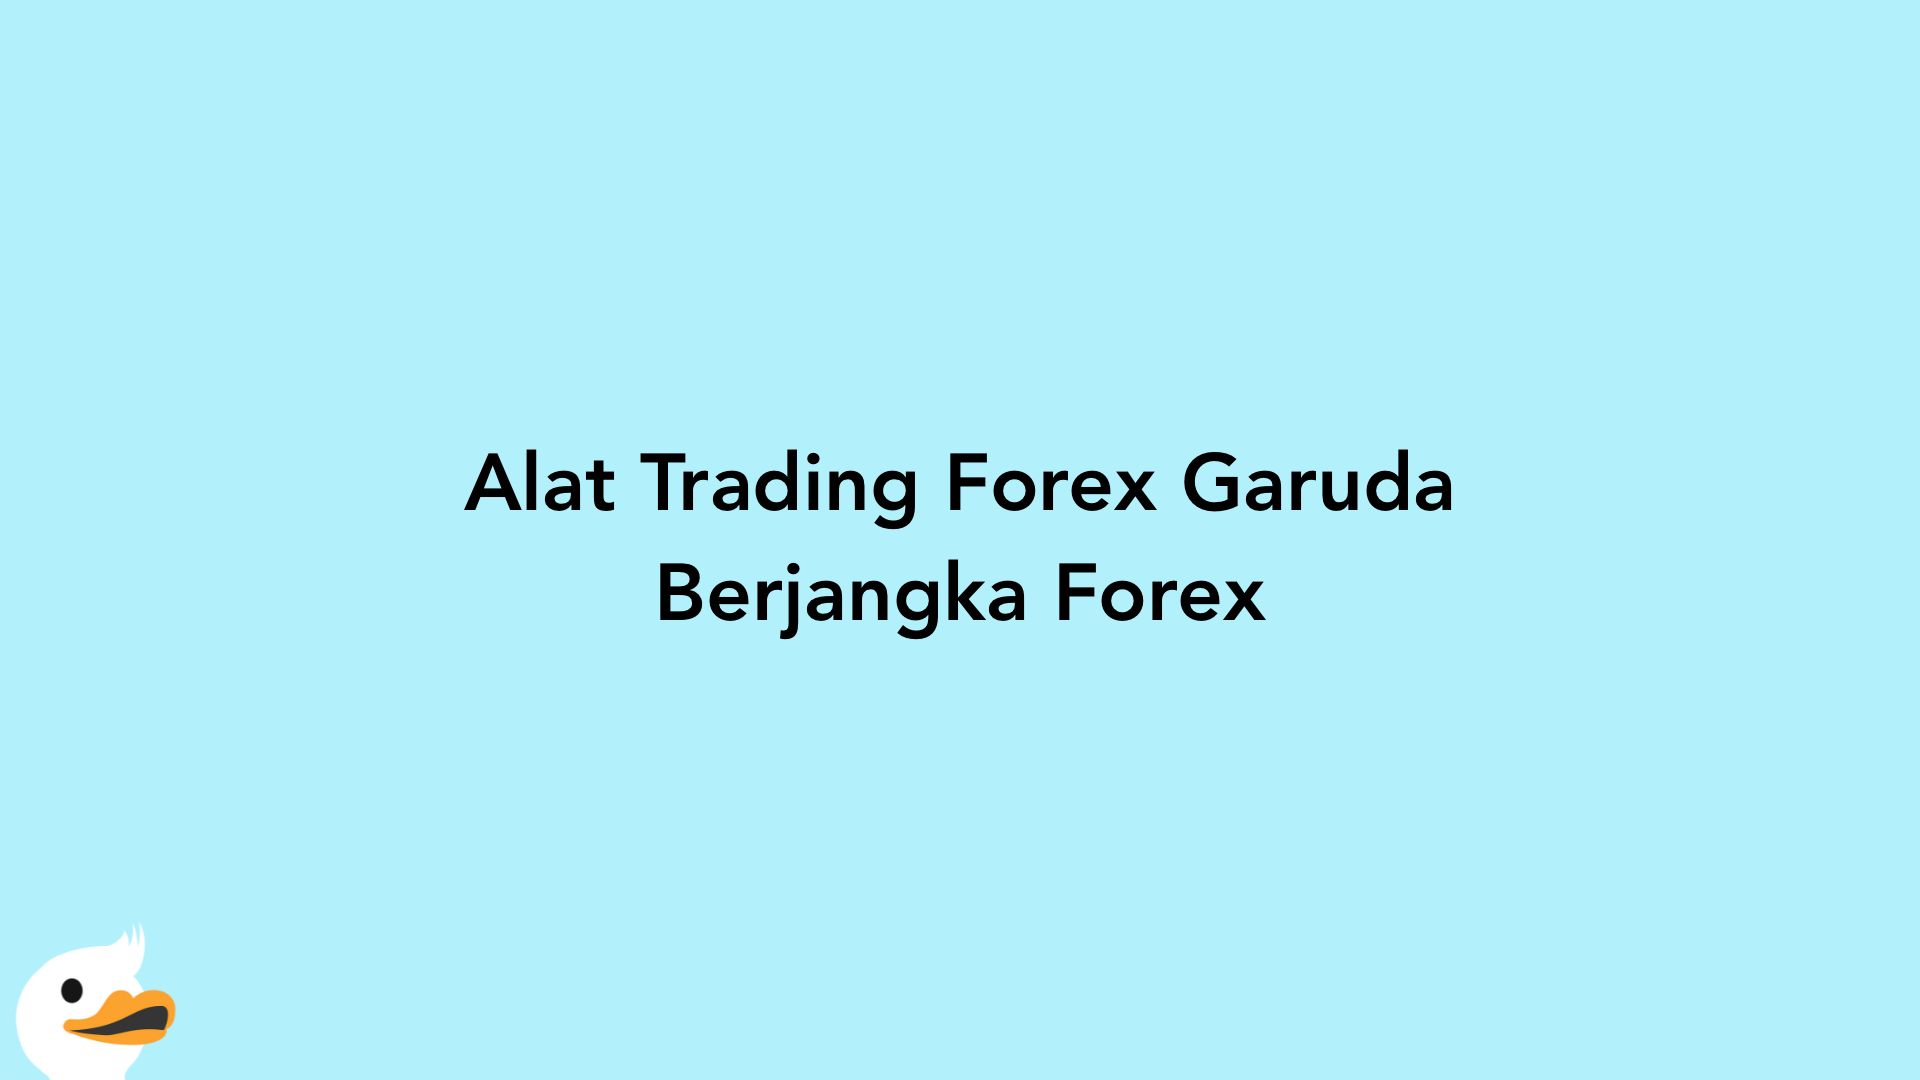 Alat Trading Forex Garuda Berjangka Forex